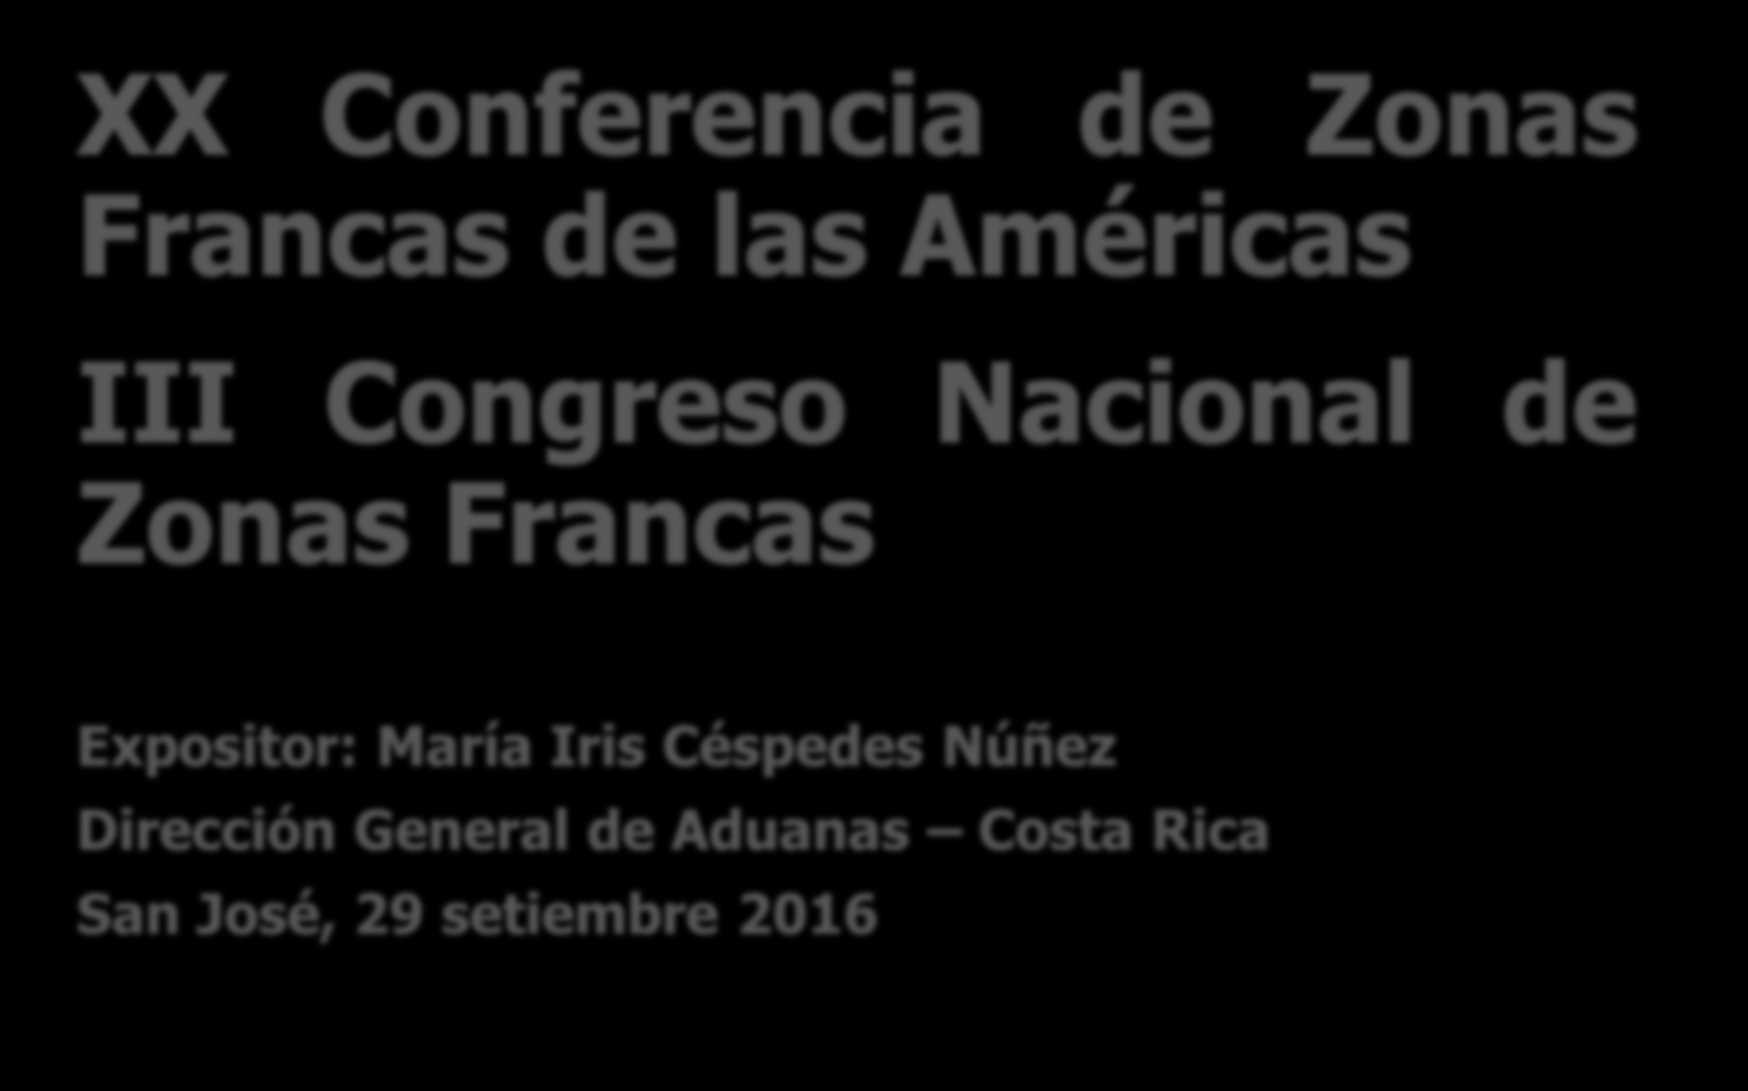 XX Conferencia de Zonas Francas de las Américas III Congreso Nacional de Zonas Francas